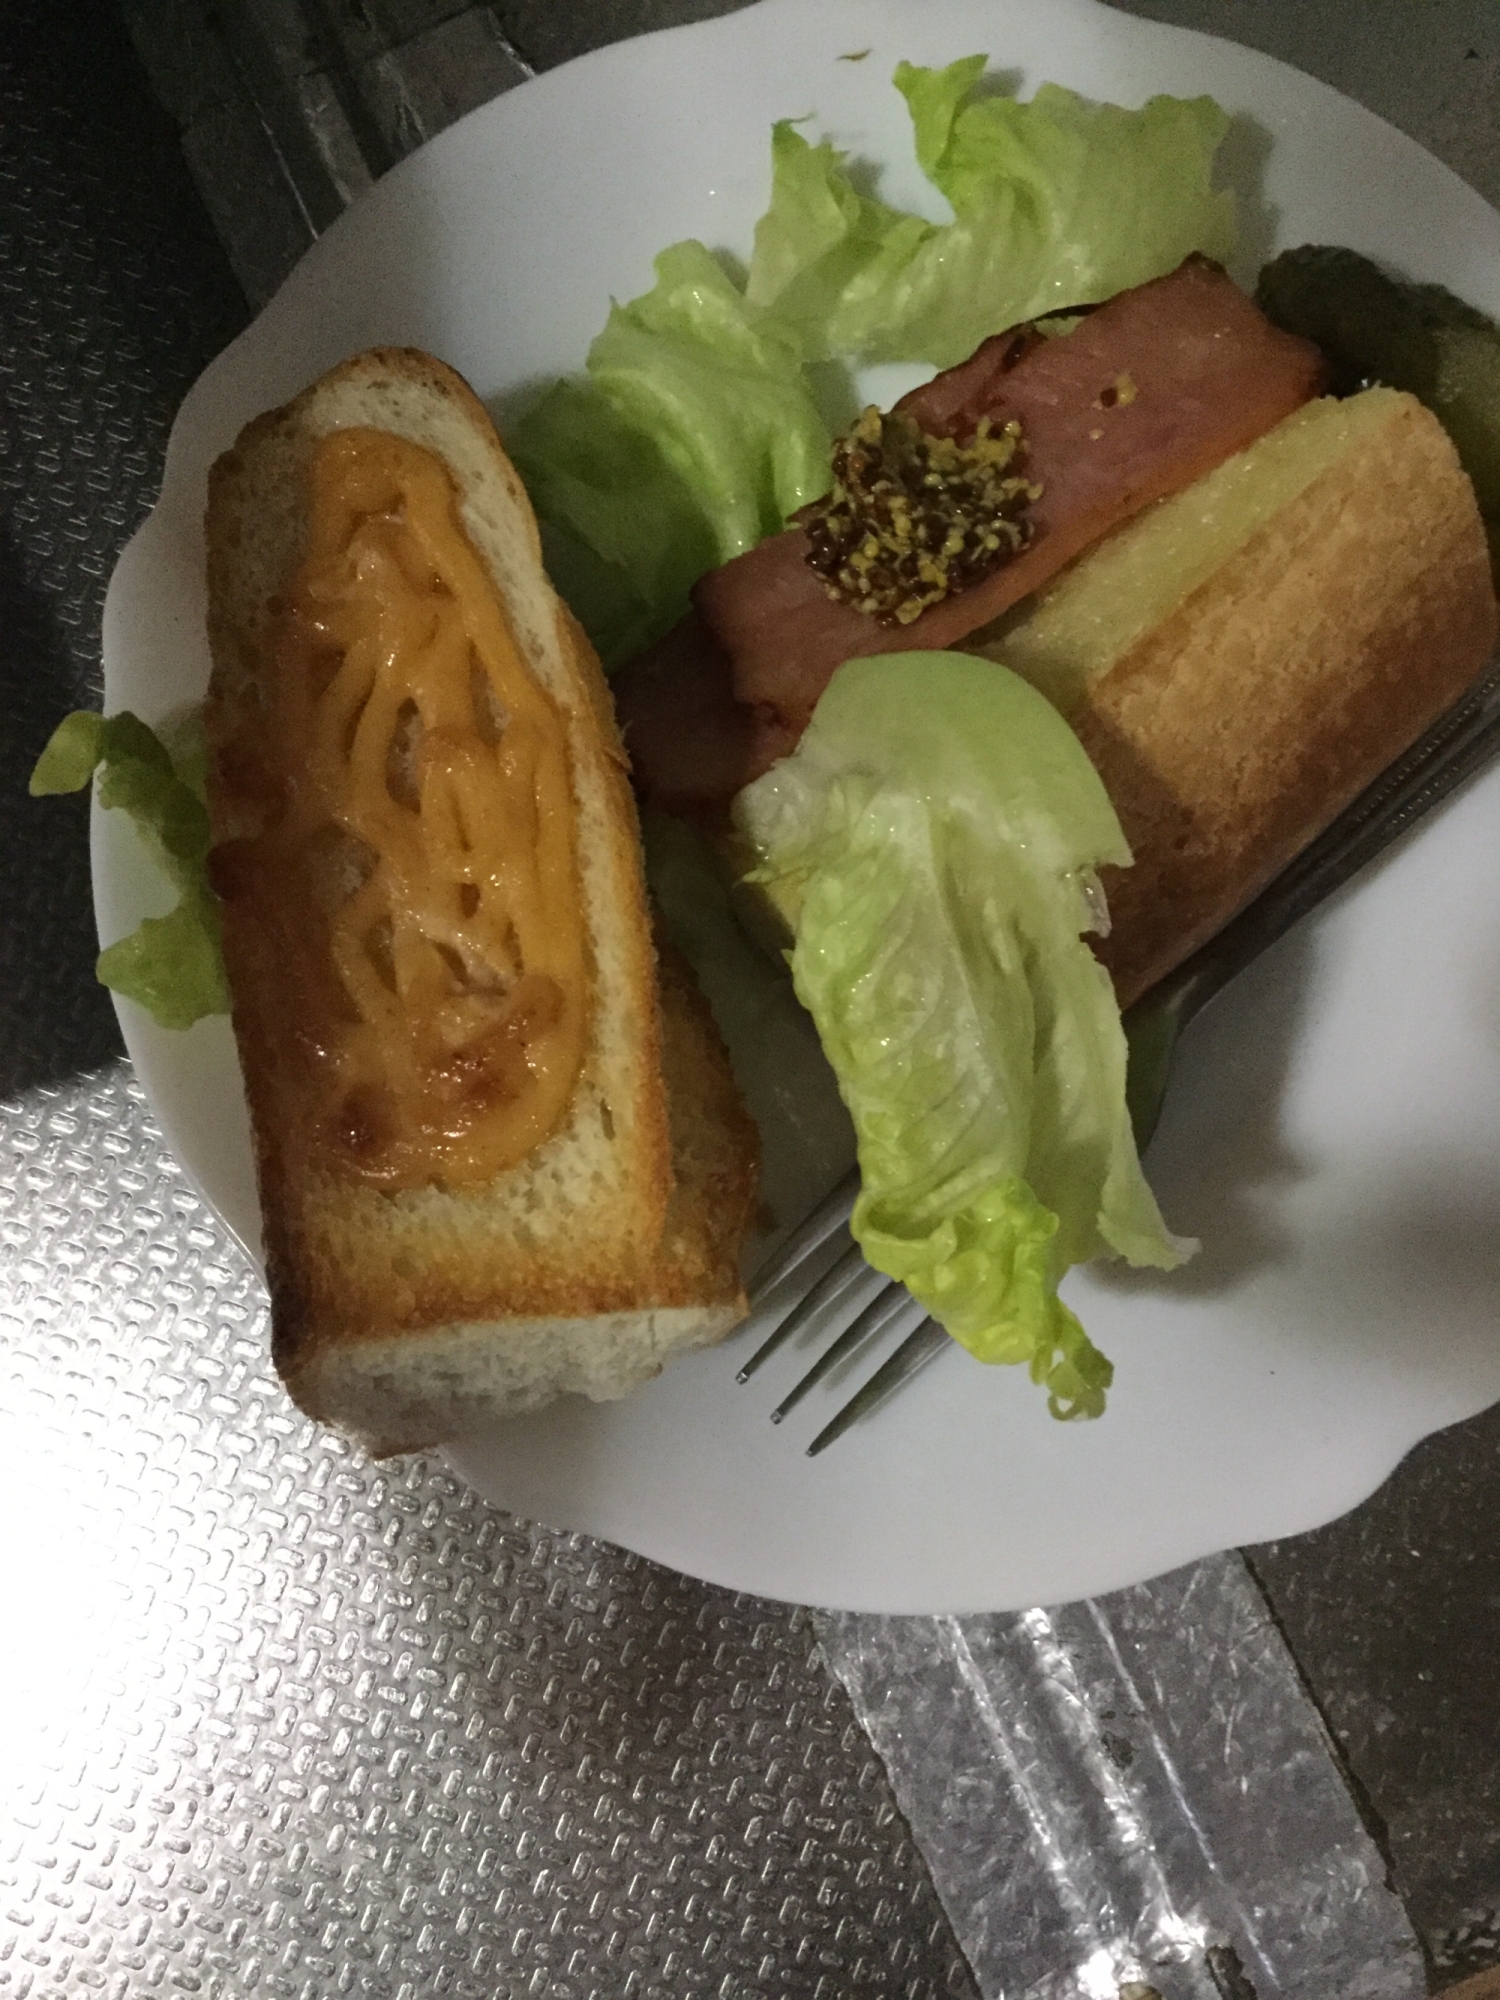 明太マヨネーズのフランスパンとチャーシュー。